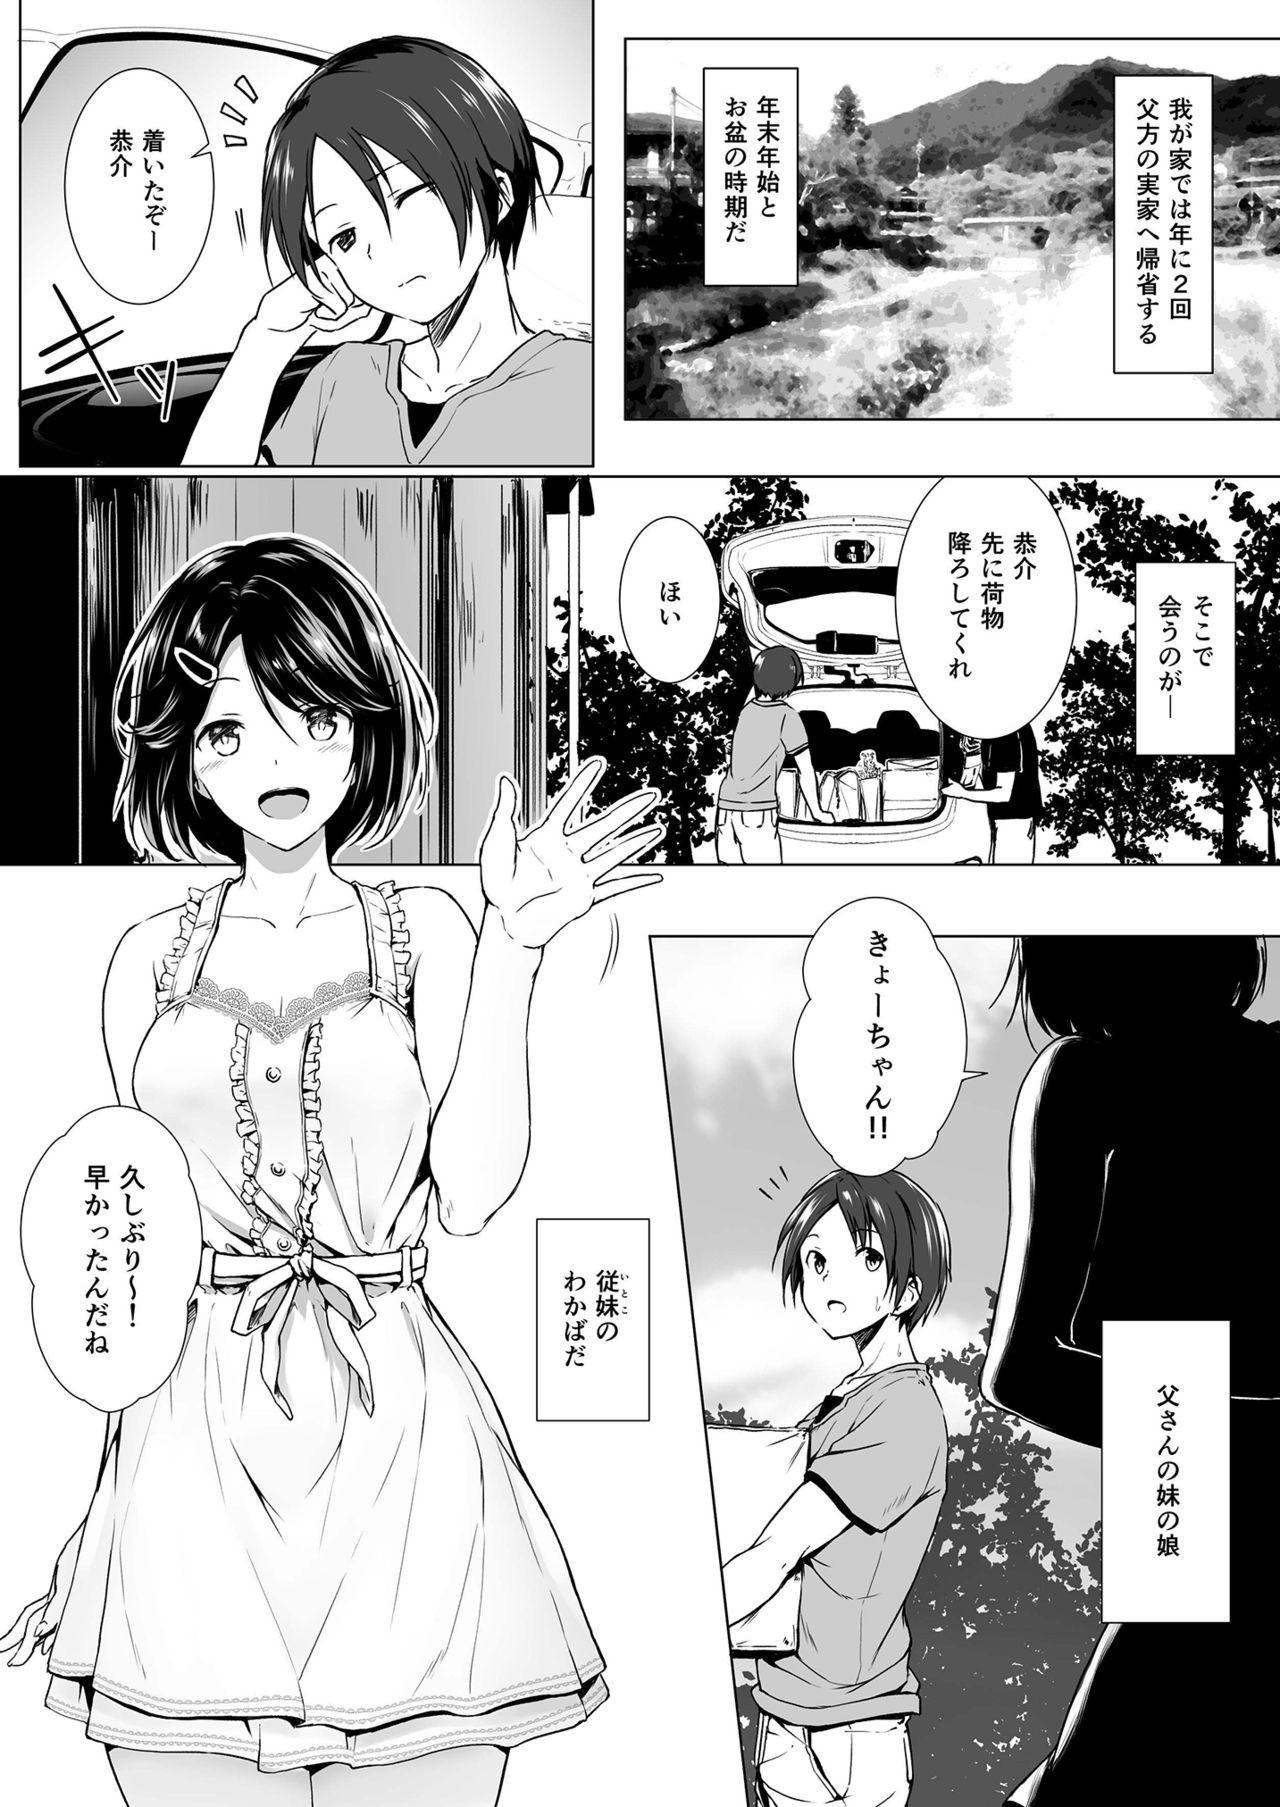 Sucking Dicks Choushin Itoko to Ecchii Koto Shiyo - Original 18 Year Old - Page 3